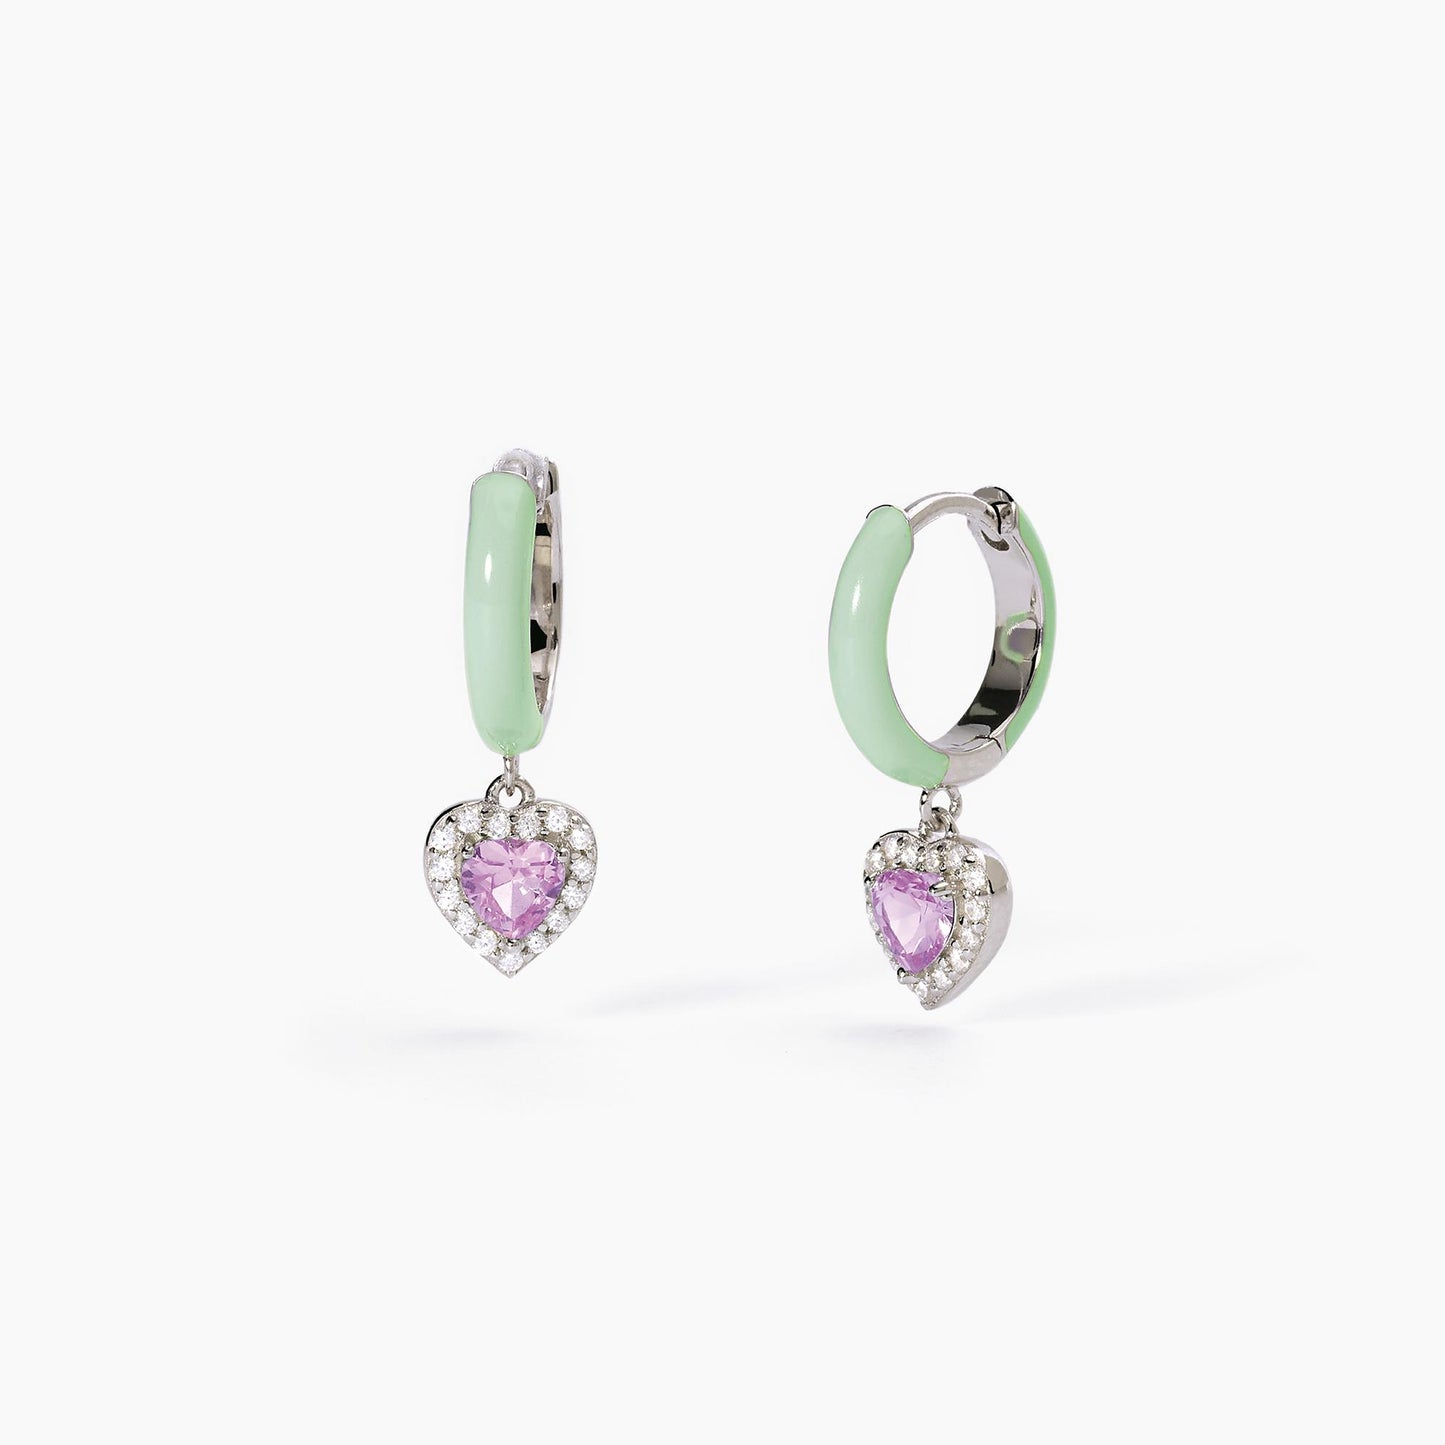 Mabina | Orecchini a cerchio in argento con smalto verde e zircone rosa | LOVE AFFAIR | 563594